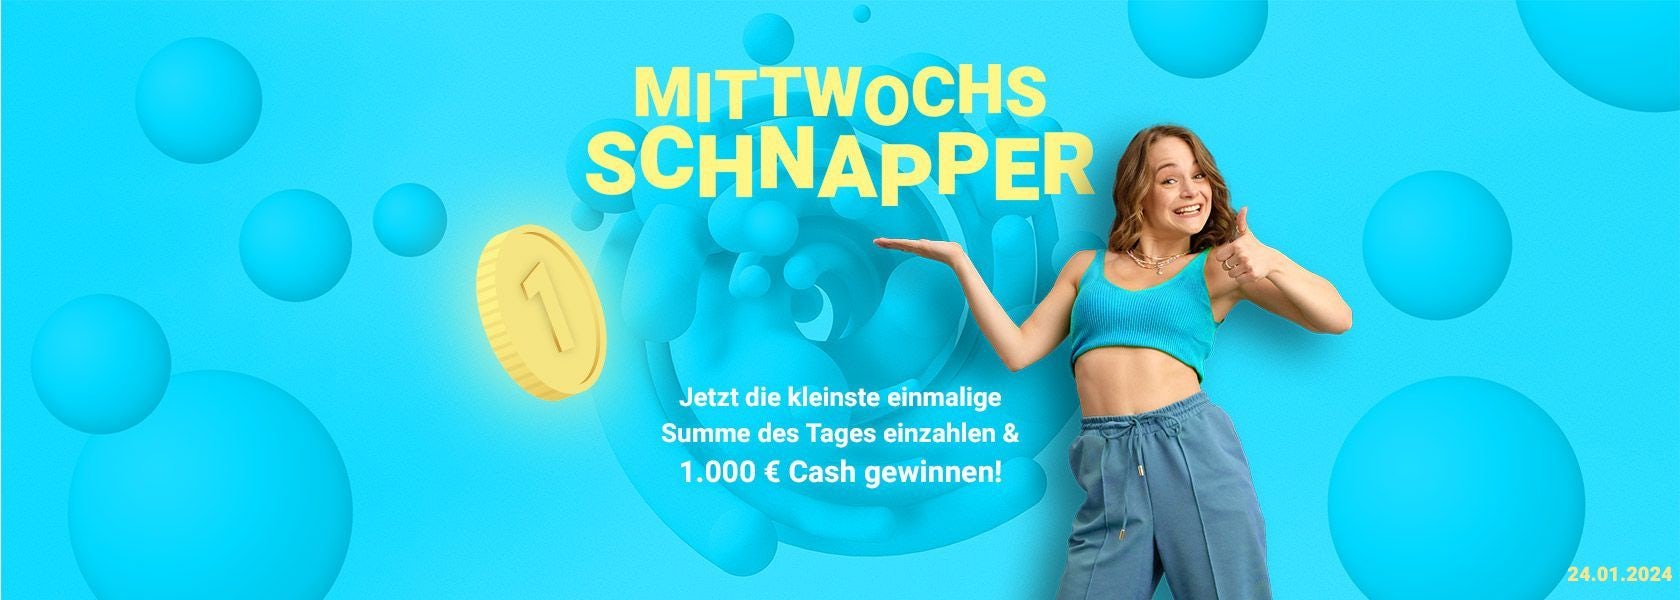 mittwochs-schnapper-bbo-24012024